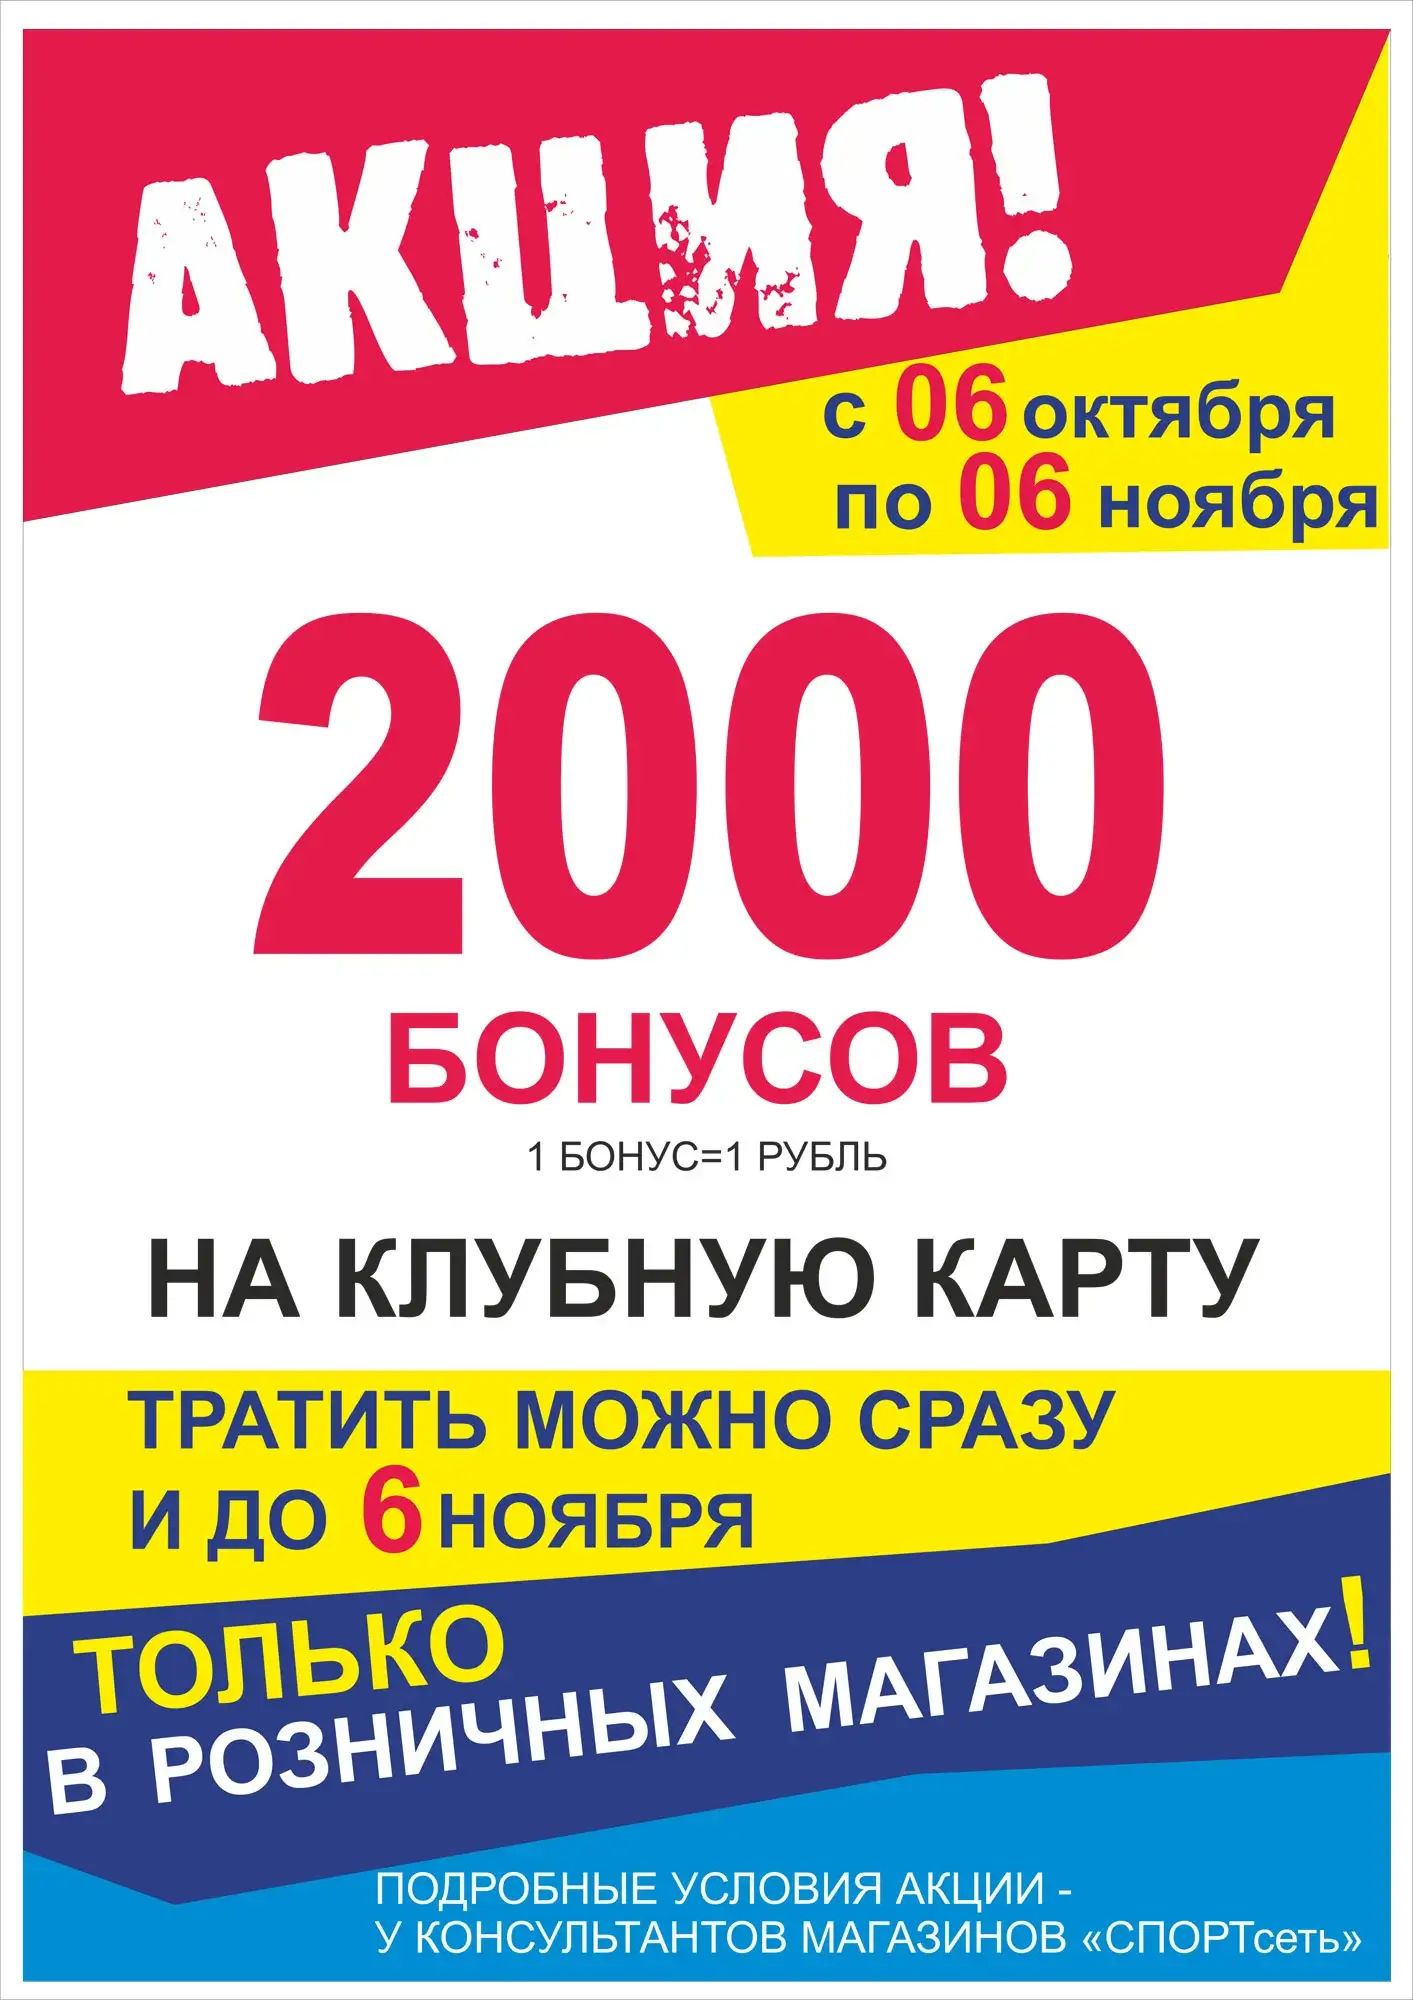 2000 бонусов в ПОДАРОК